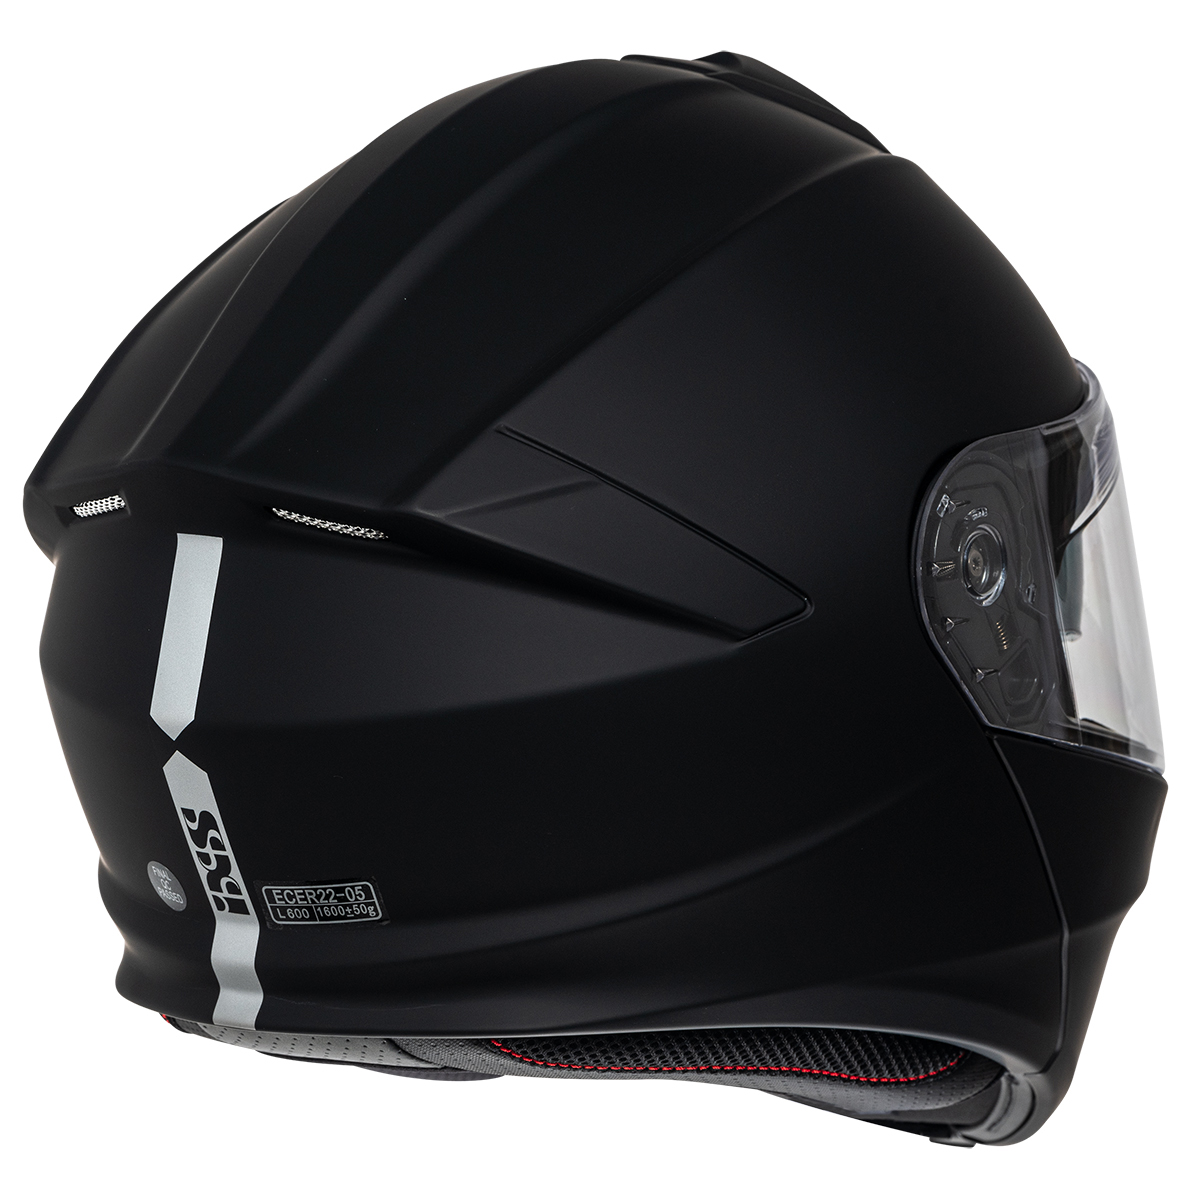 iXS Helm iXS301 1.0, schwarz matt